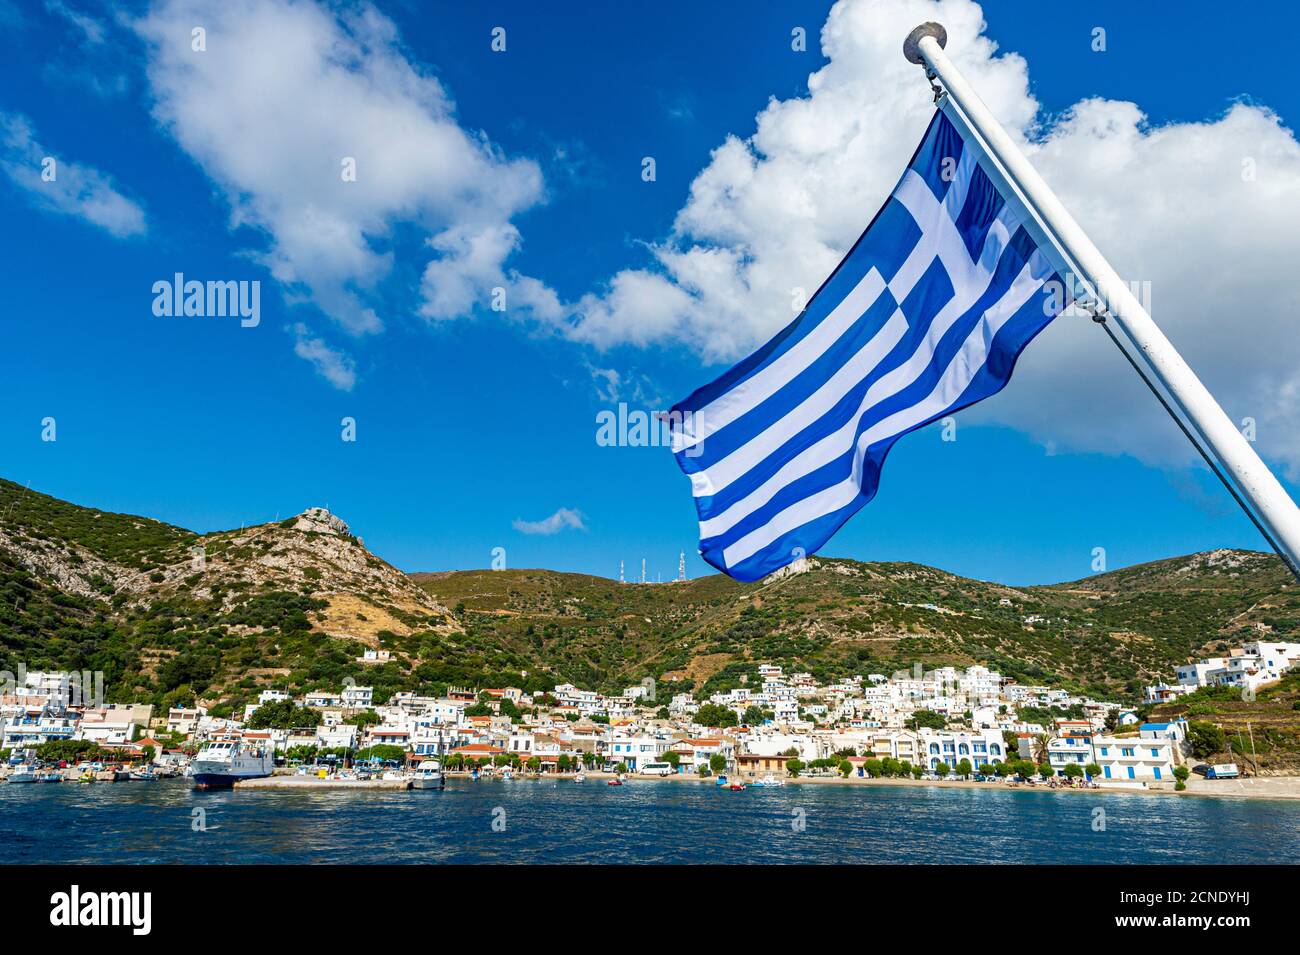 Drapeau grec dans le port de Kampi, Fourni (Fournoi), Iles grecques, Grèce, Europe Banque D'Images